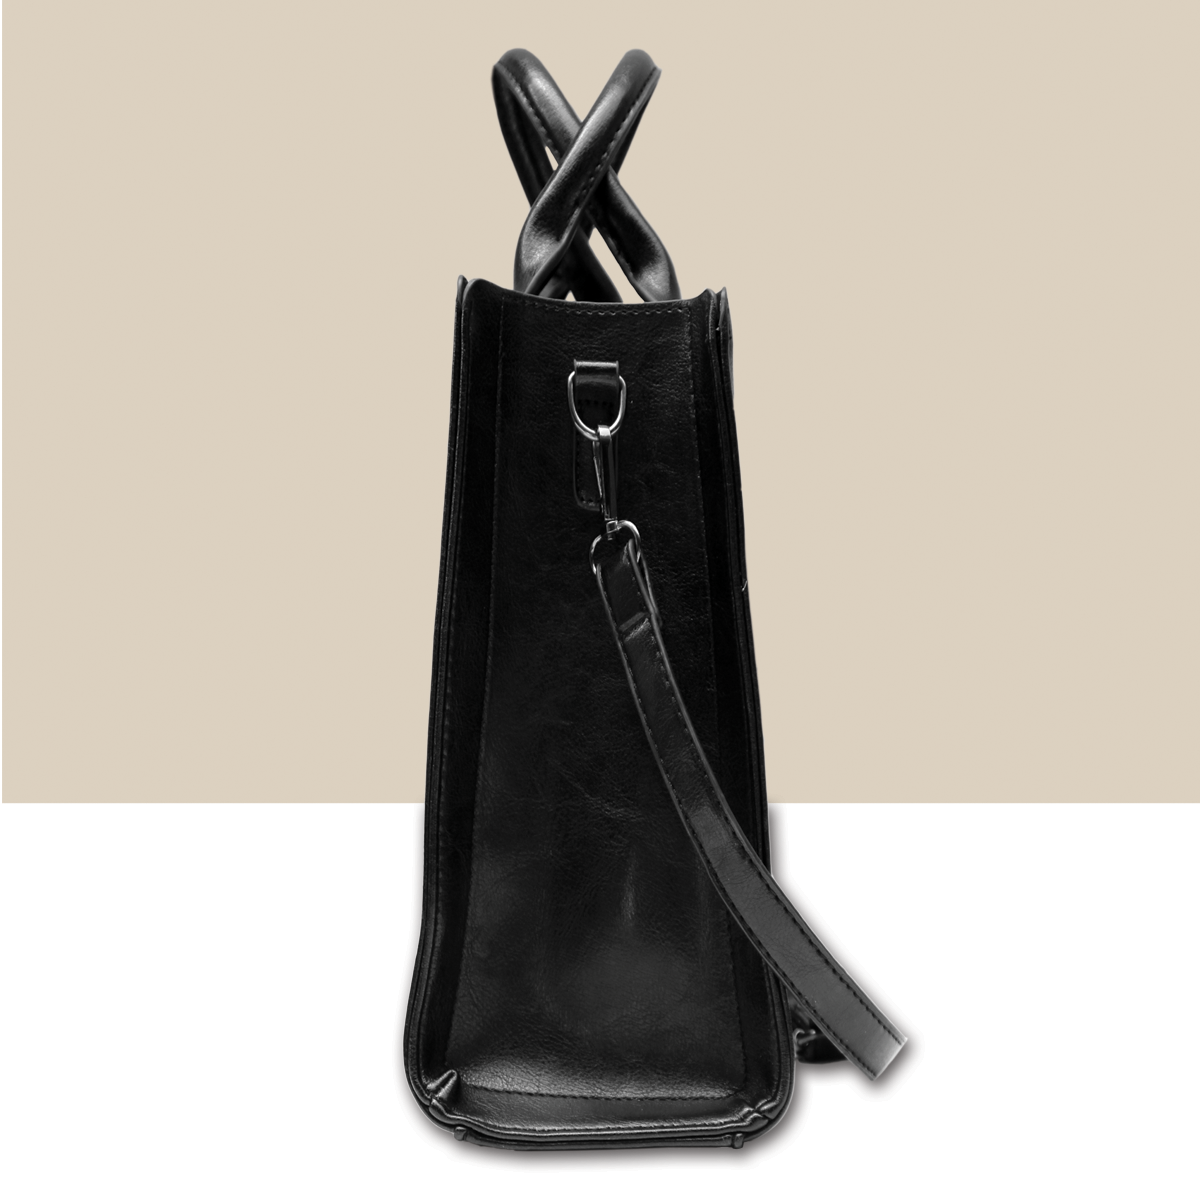 Bullmastiff Luxury Handbag V1